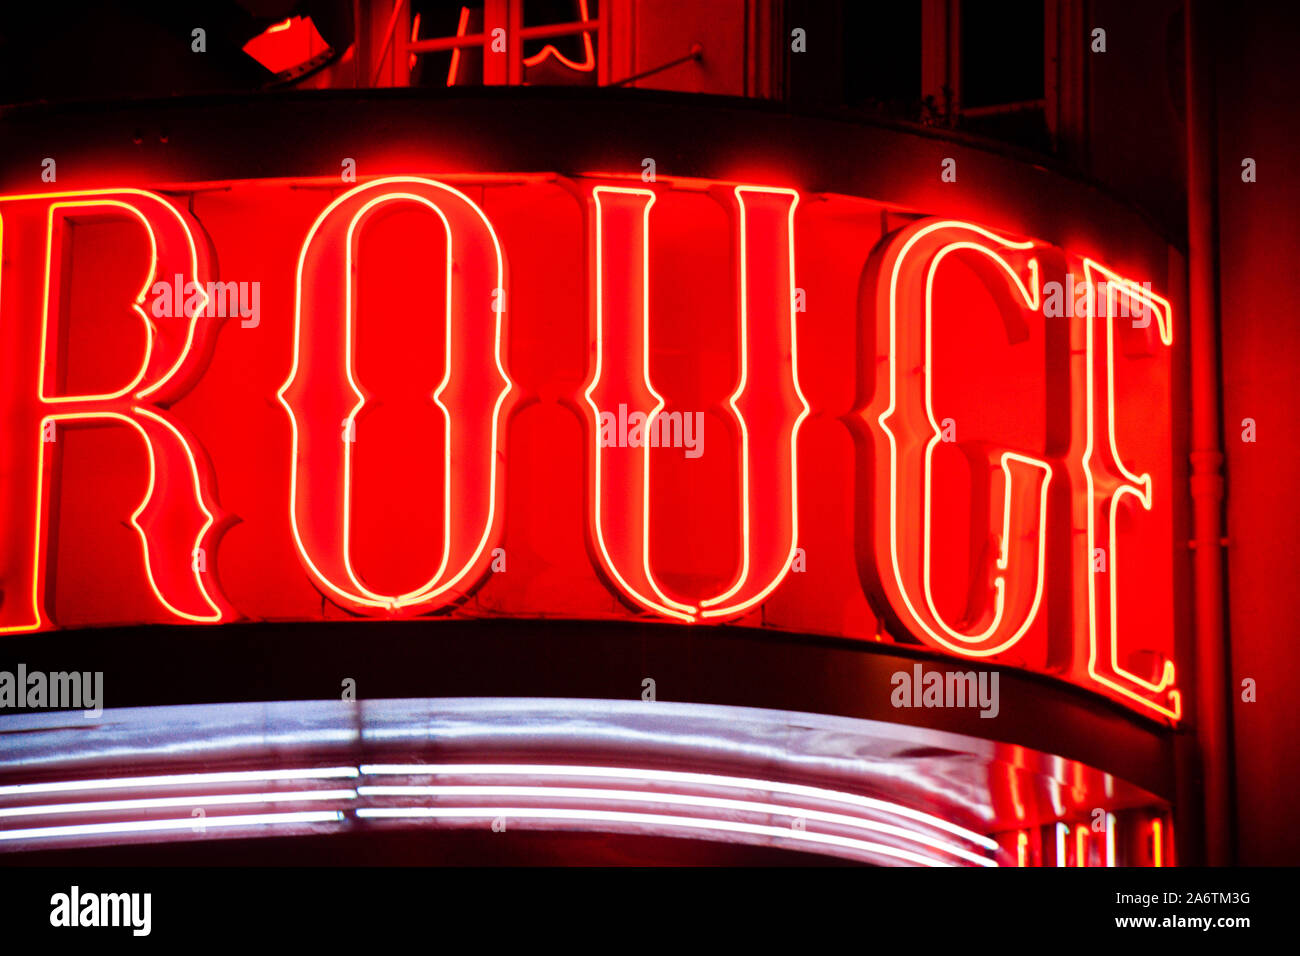 Close-up detalle del cartel de neón del cabaret Moulin Rouge, en París, Francia, por la noche - tubo fluorescente rojo - Cartas de colores saturados y Horizontal s Foto de stock